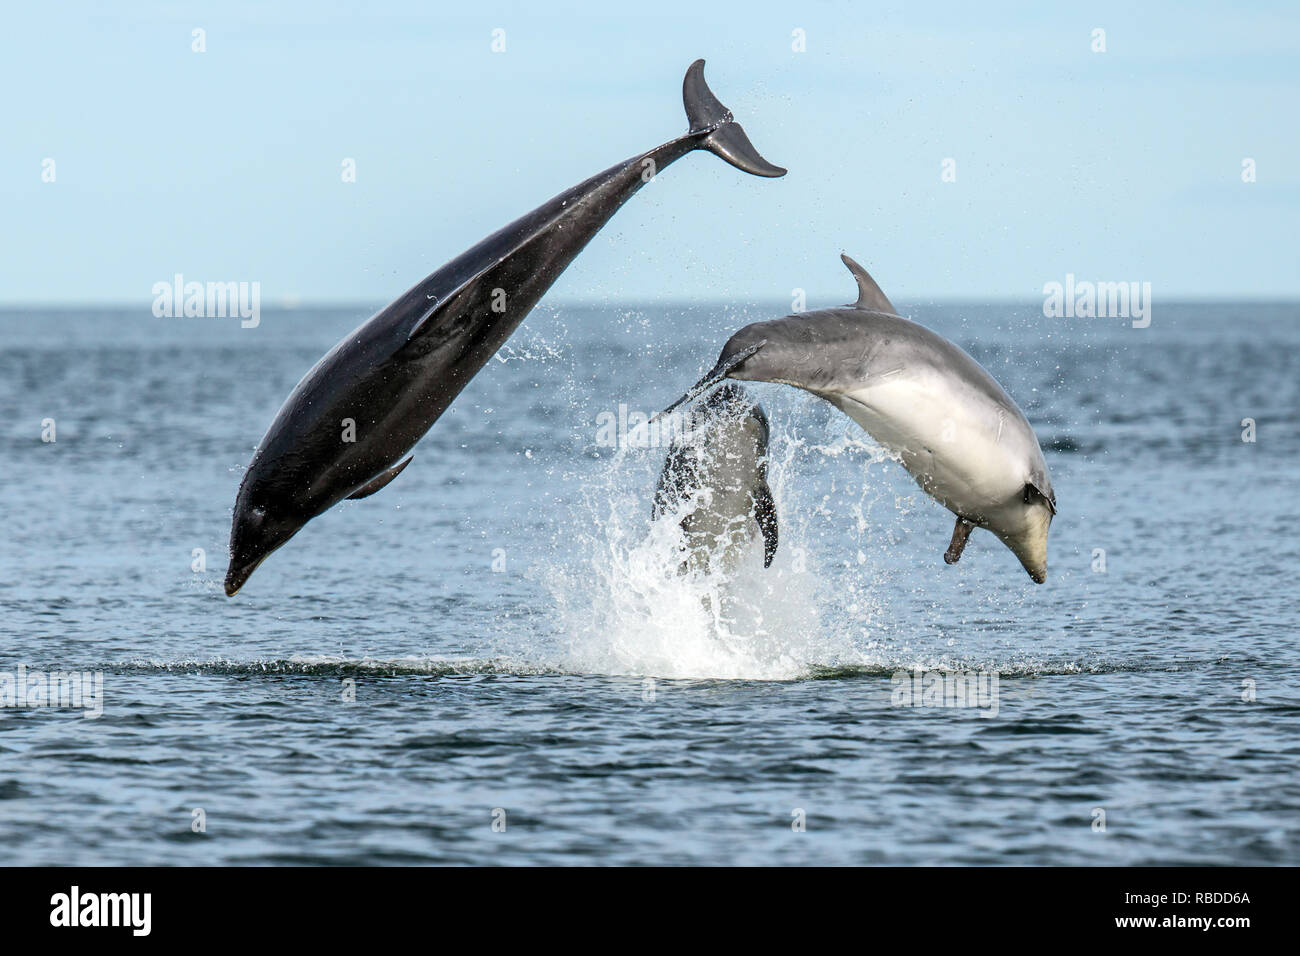 INVERNESS, Escocia: tres delfines mulares incumplimiento el agua a punto de Chanonry cerca de Inverness, Escocia. Tres divertidos delfines pone en un impresionante despliegue de curiosos en como han infringido y voltear a través de las aguas del punto Chanonry cerca de Inverness. Los delfines mulares incluida la miel, un joven de 11 años de edad y madre de dos jóvenes también pueden ser vistos nadando en perfecta sintonía, apareciendo a la raza mutuamente a través del agua en las Tierras Altas de Escocia. WDC / Charlie Phillips / mediadrumworld.com Foto de stock